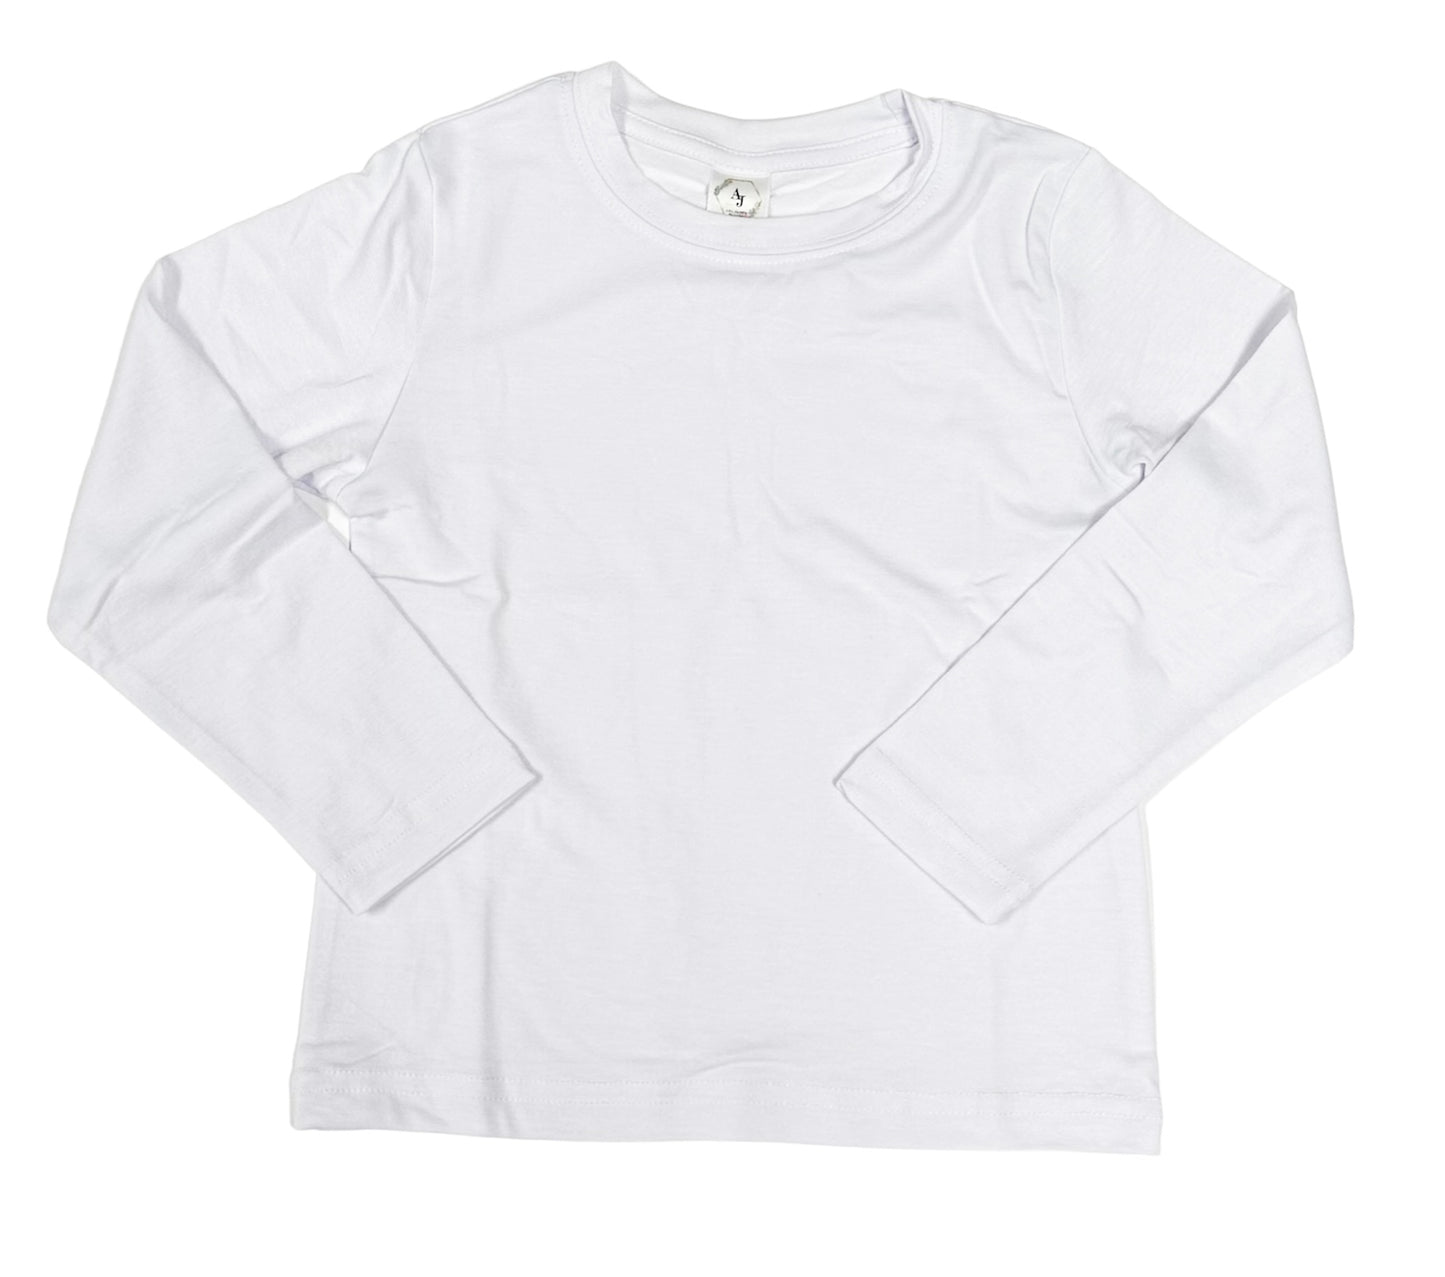 Adult Long Sleeve Unisex Shirt